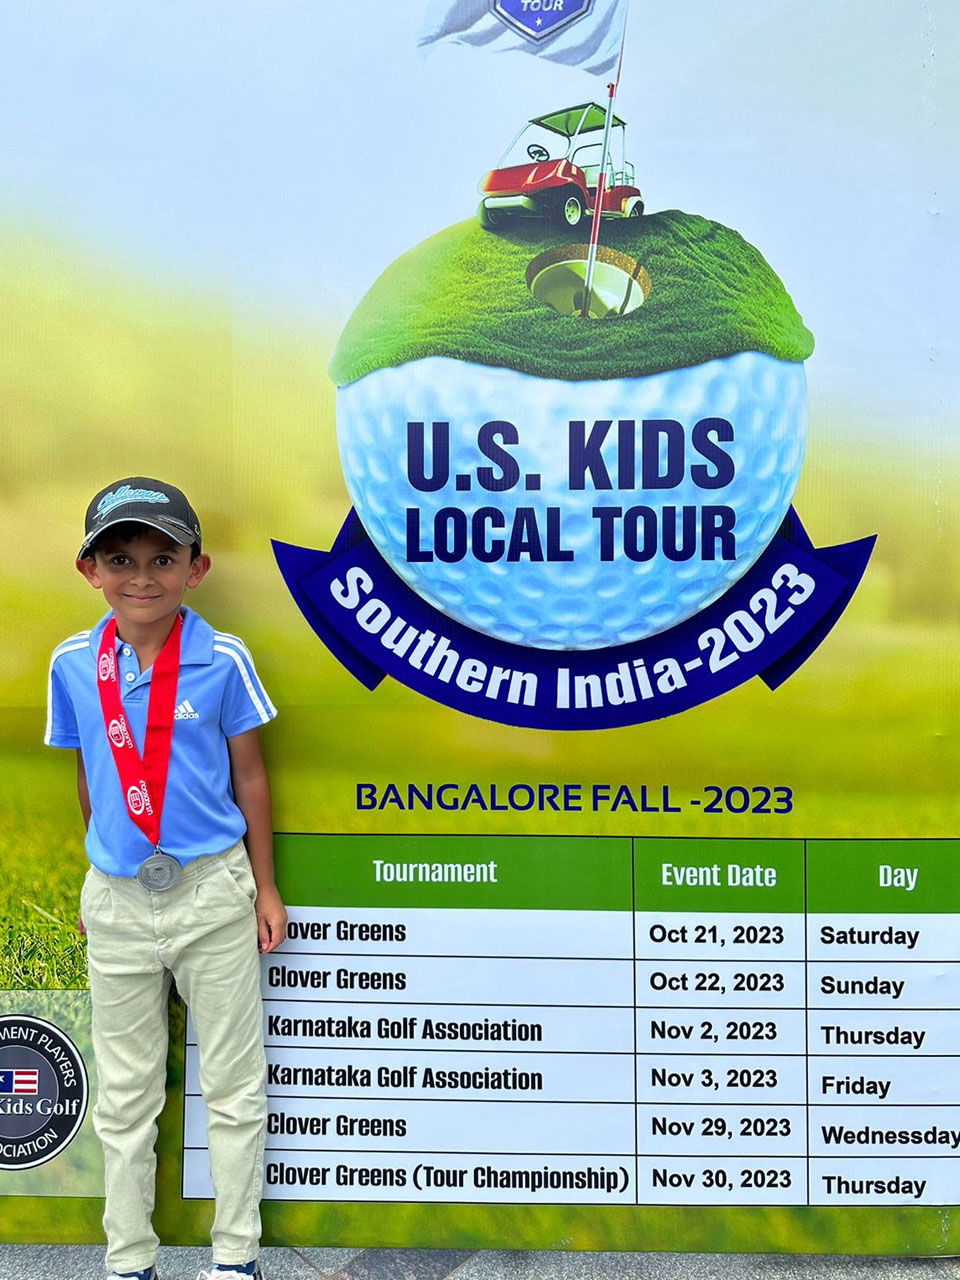 Kabir Singh won a Silver medal in the US Kids